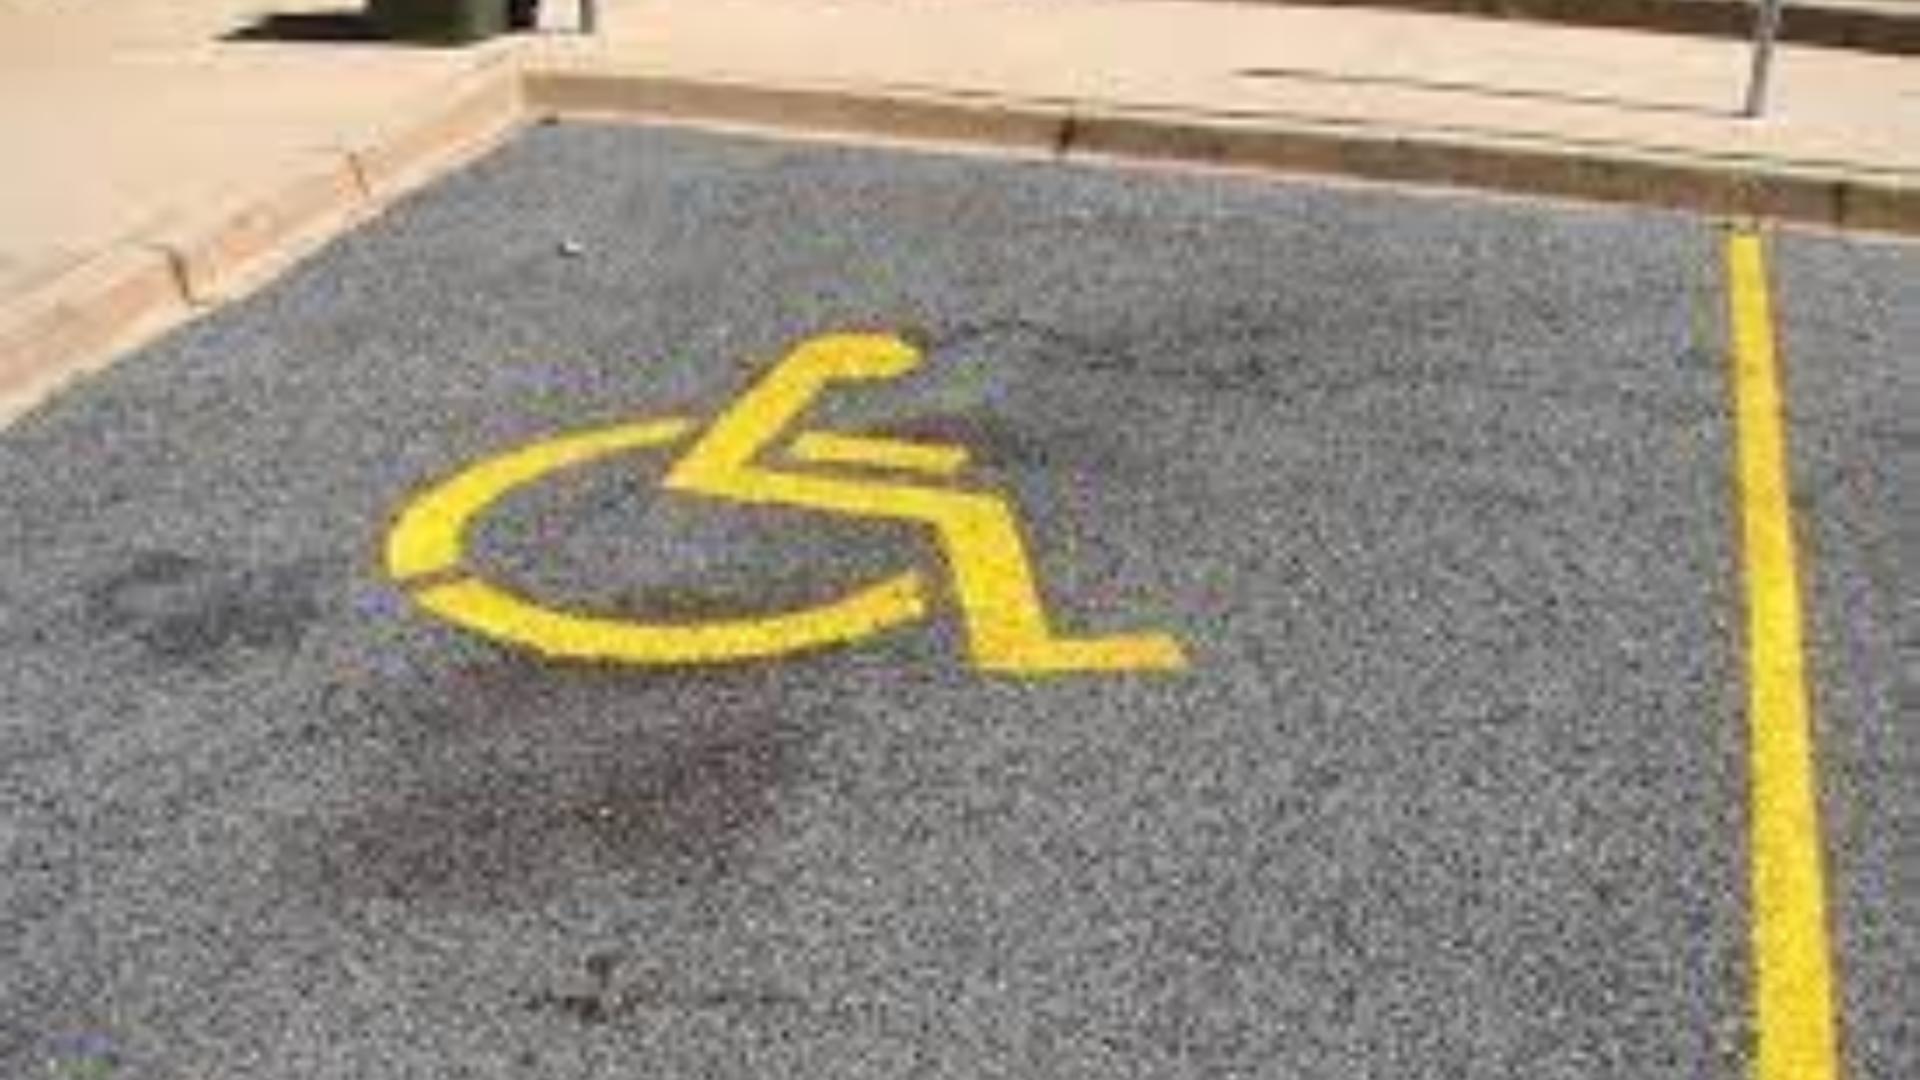 Schema prin care românii obțin locuri de parcare pentru persoane cu handicap. Ce a descoperit Primăria Arad